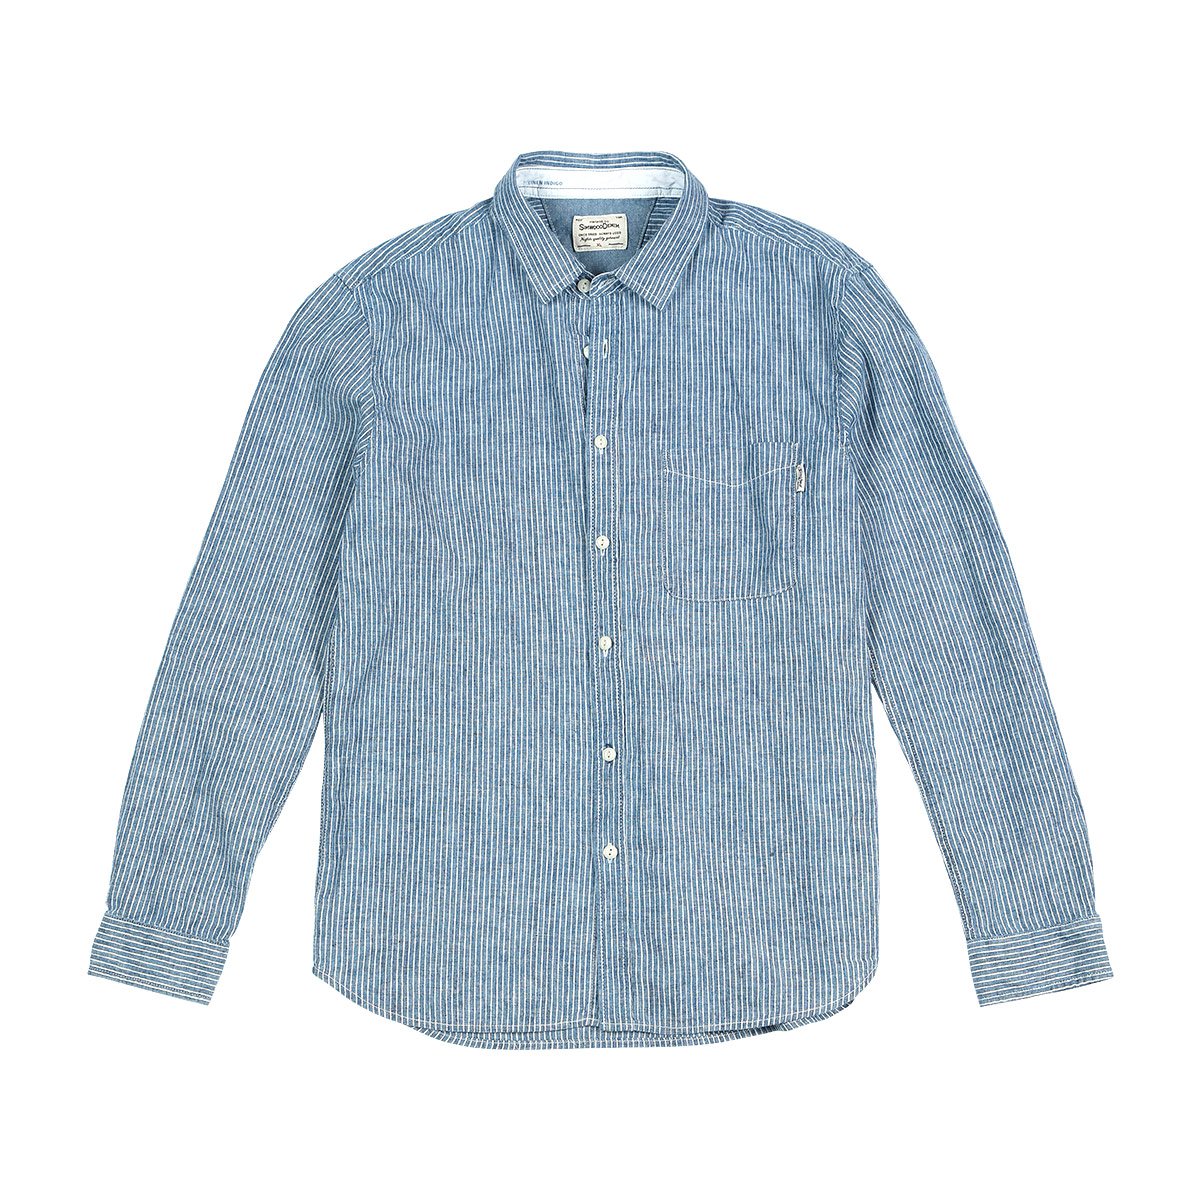 Cotton linen long sleeve shirt - CJdropshipping